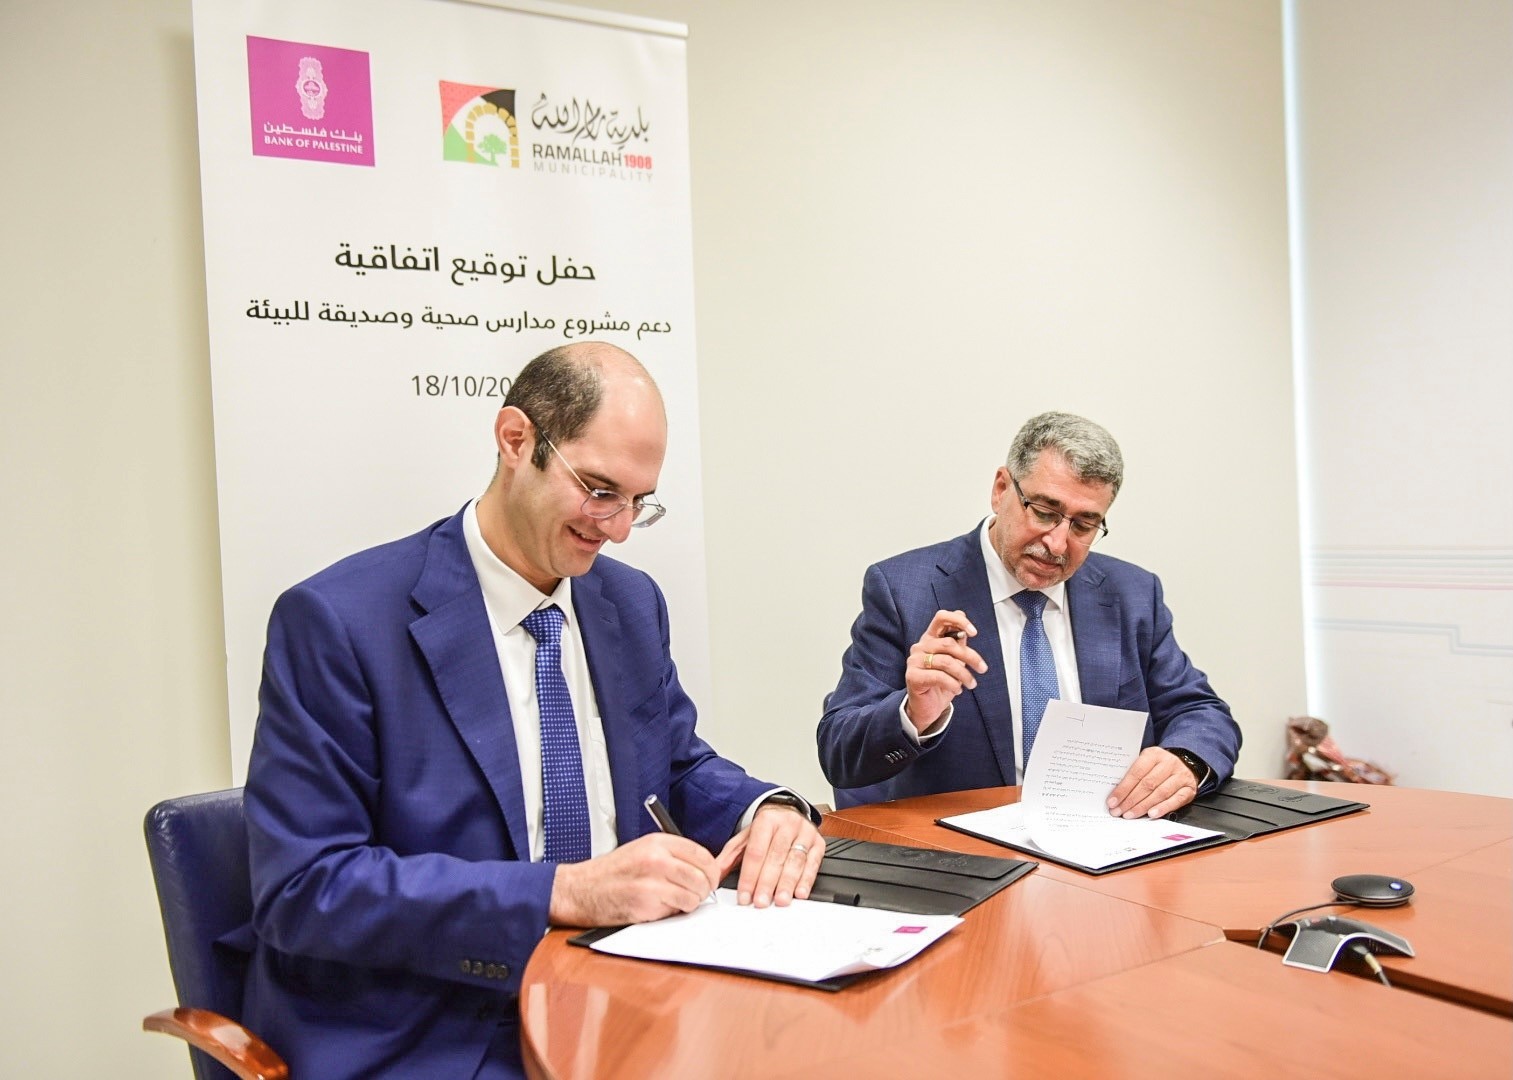 بنك فلسطين يوقع اتفاقية مع بلدية رام الله لتنفيذ مشروع التوعية البيئية للعام الدراسي  1